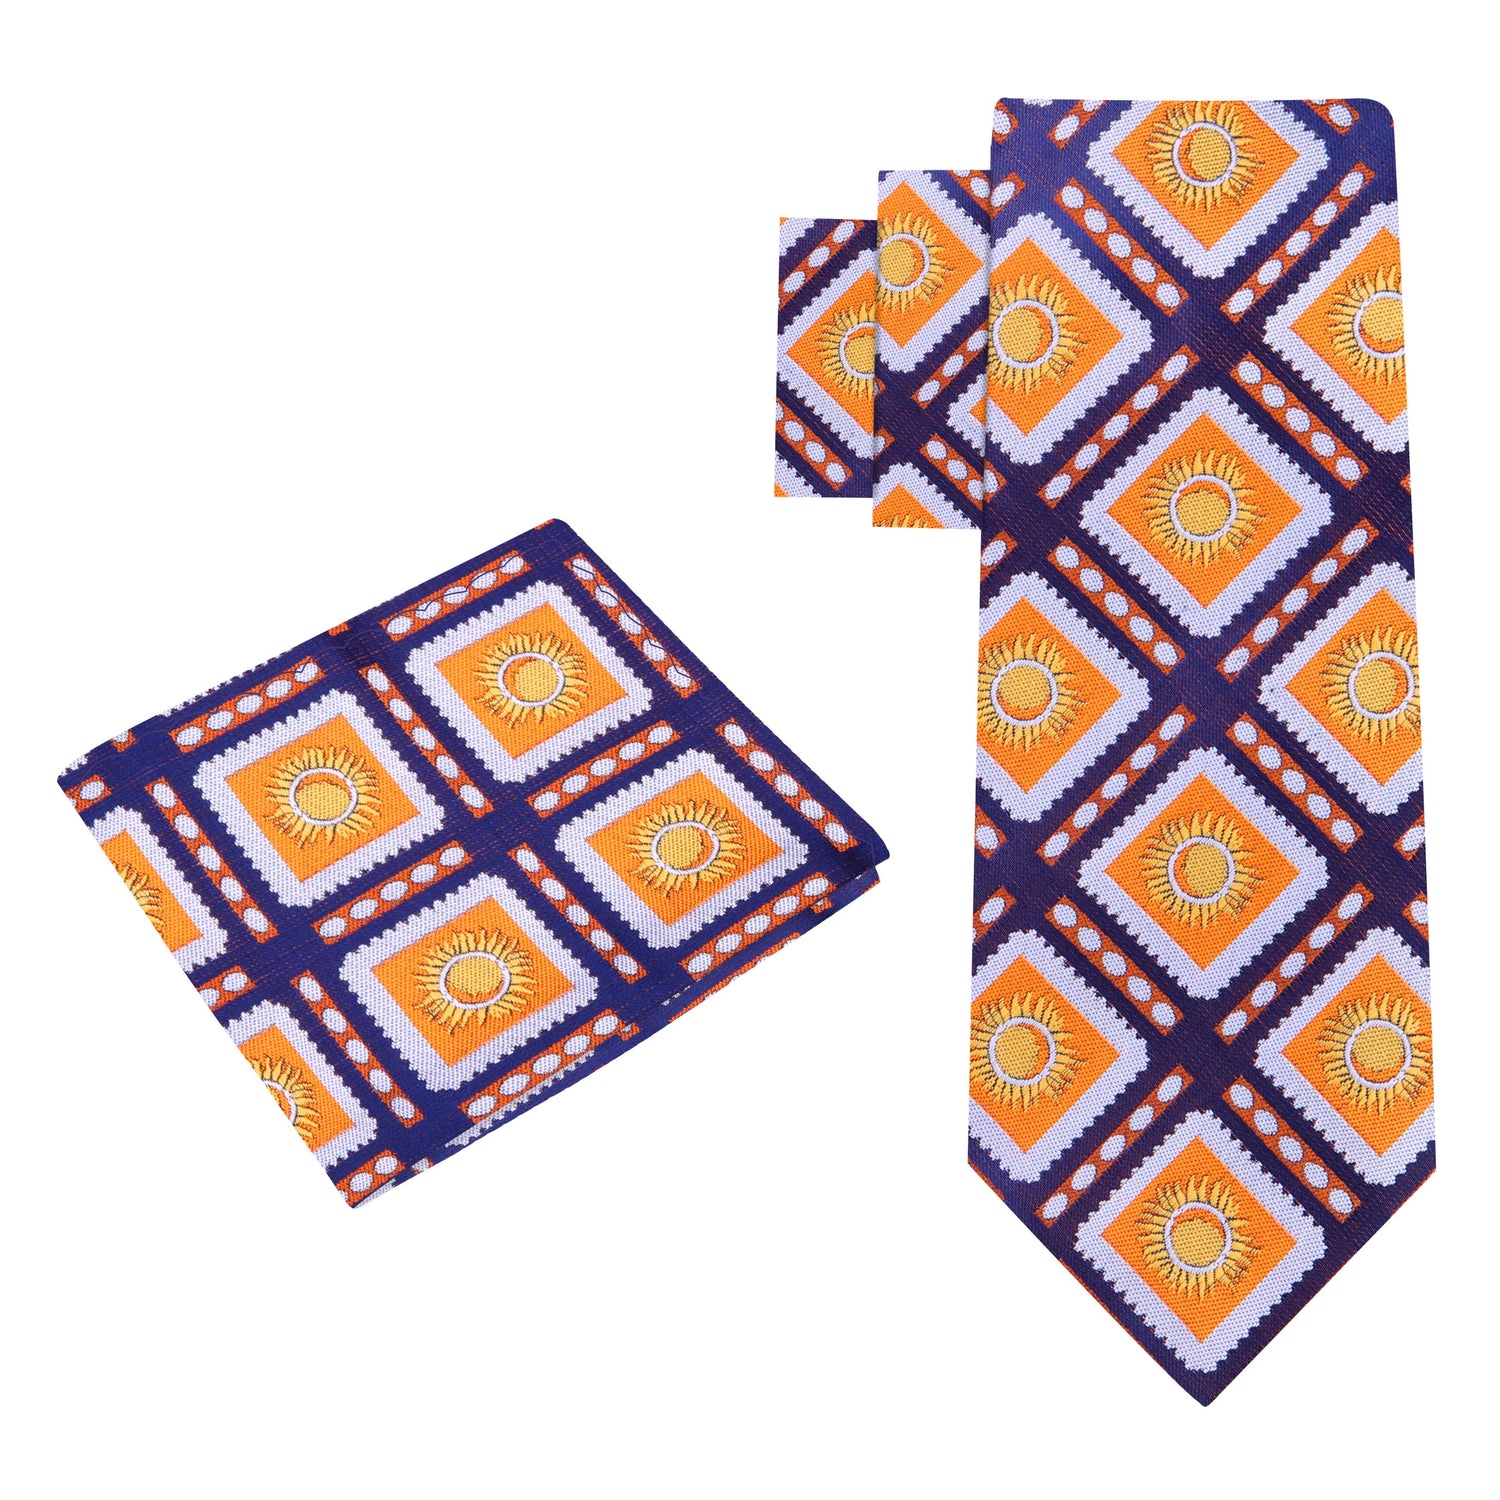 A Dark Blue, Orange Sunburst Design Silk Necktie, Matching Pocket Square